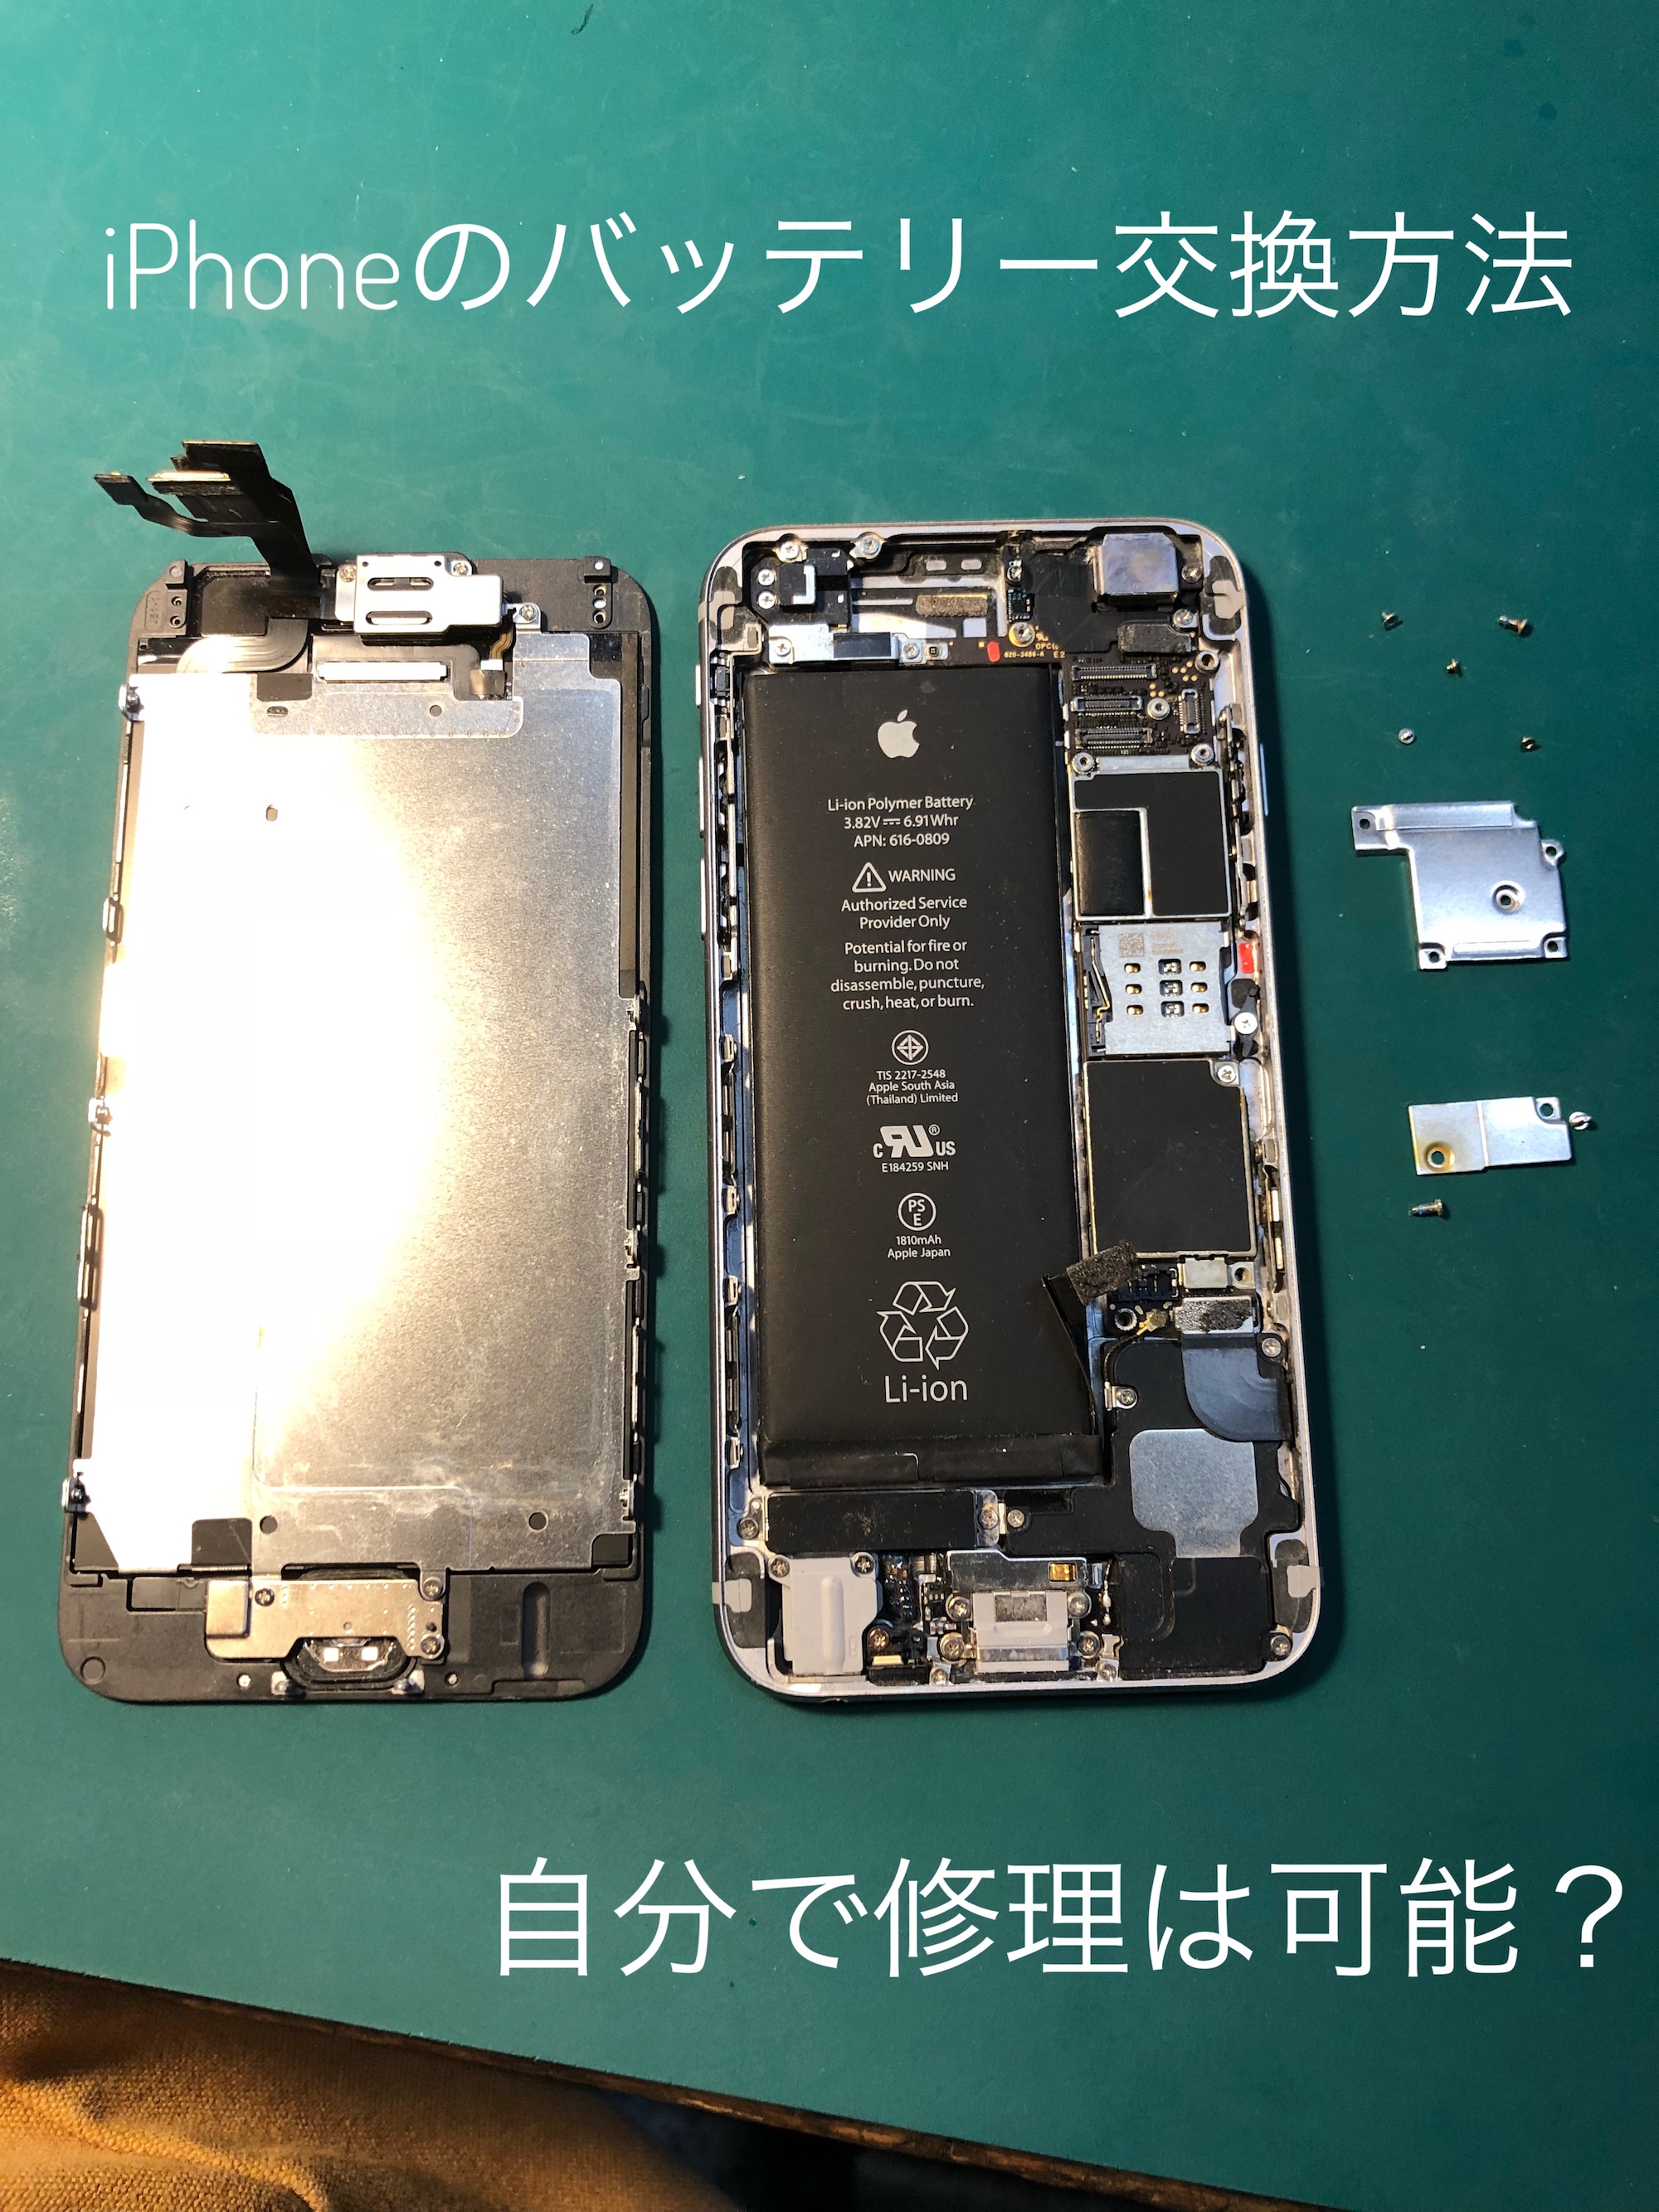 Iphoneのバッテリー交換を 自分で修理 するのが最も安い Repairs リペアーズ